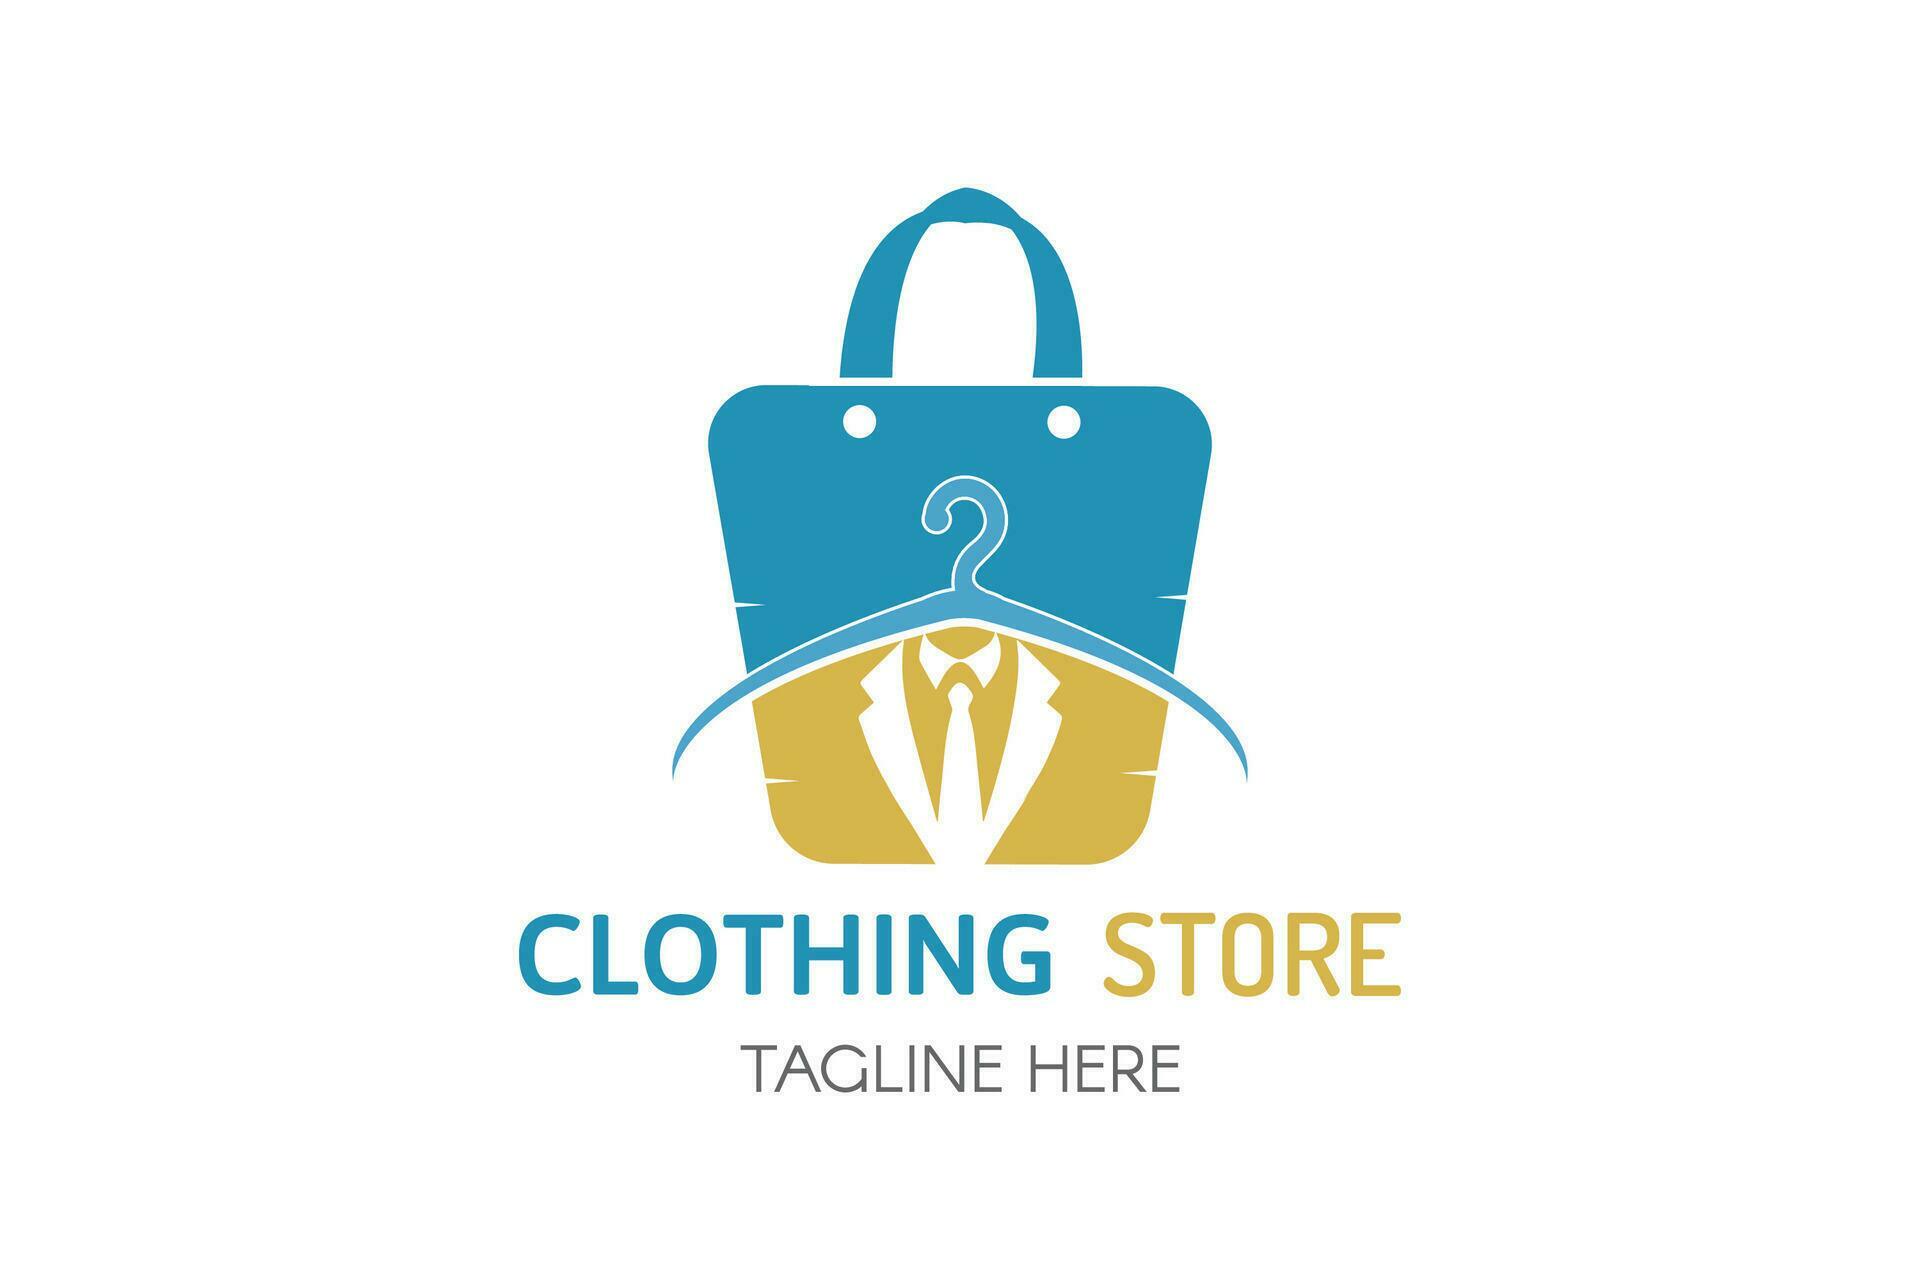 Clothing store logo design vector. Shopping bag with hanger logo design ...